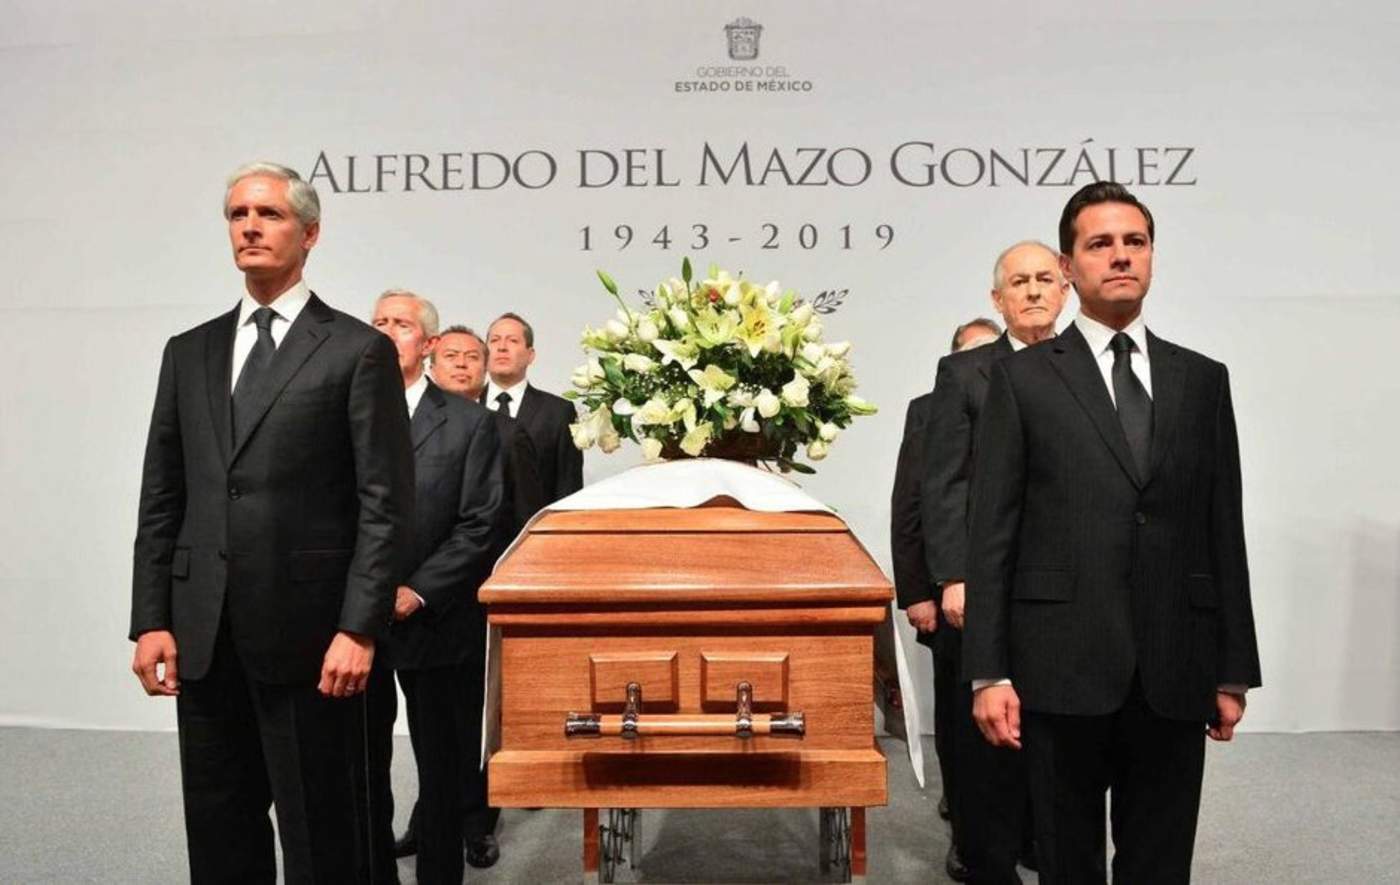 'Es una gran pérdida, fue un gran servidor público, sostuve una amistad entrañable, profunda, creo que todos lamentamos su deceso', dijo Peña Nieto. (ESPECIAL)